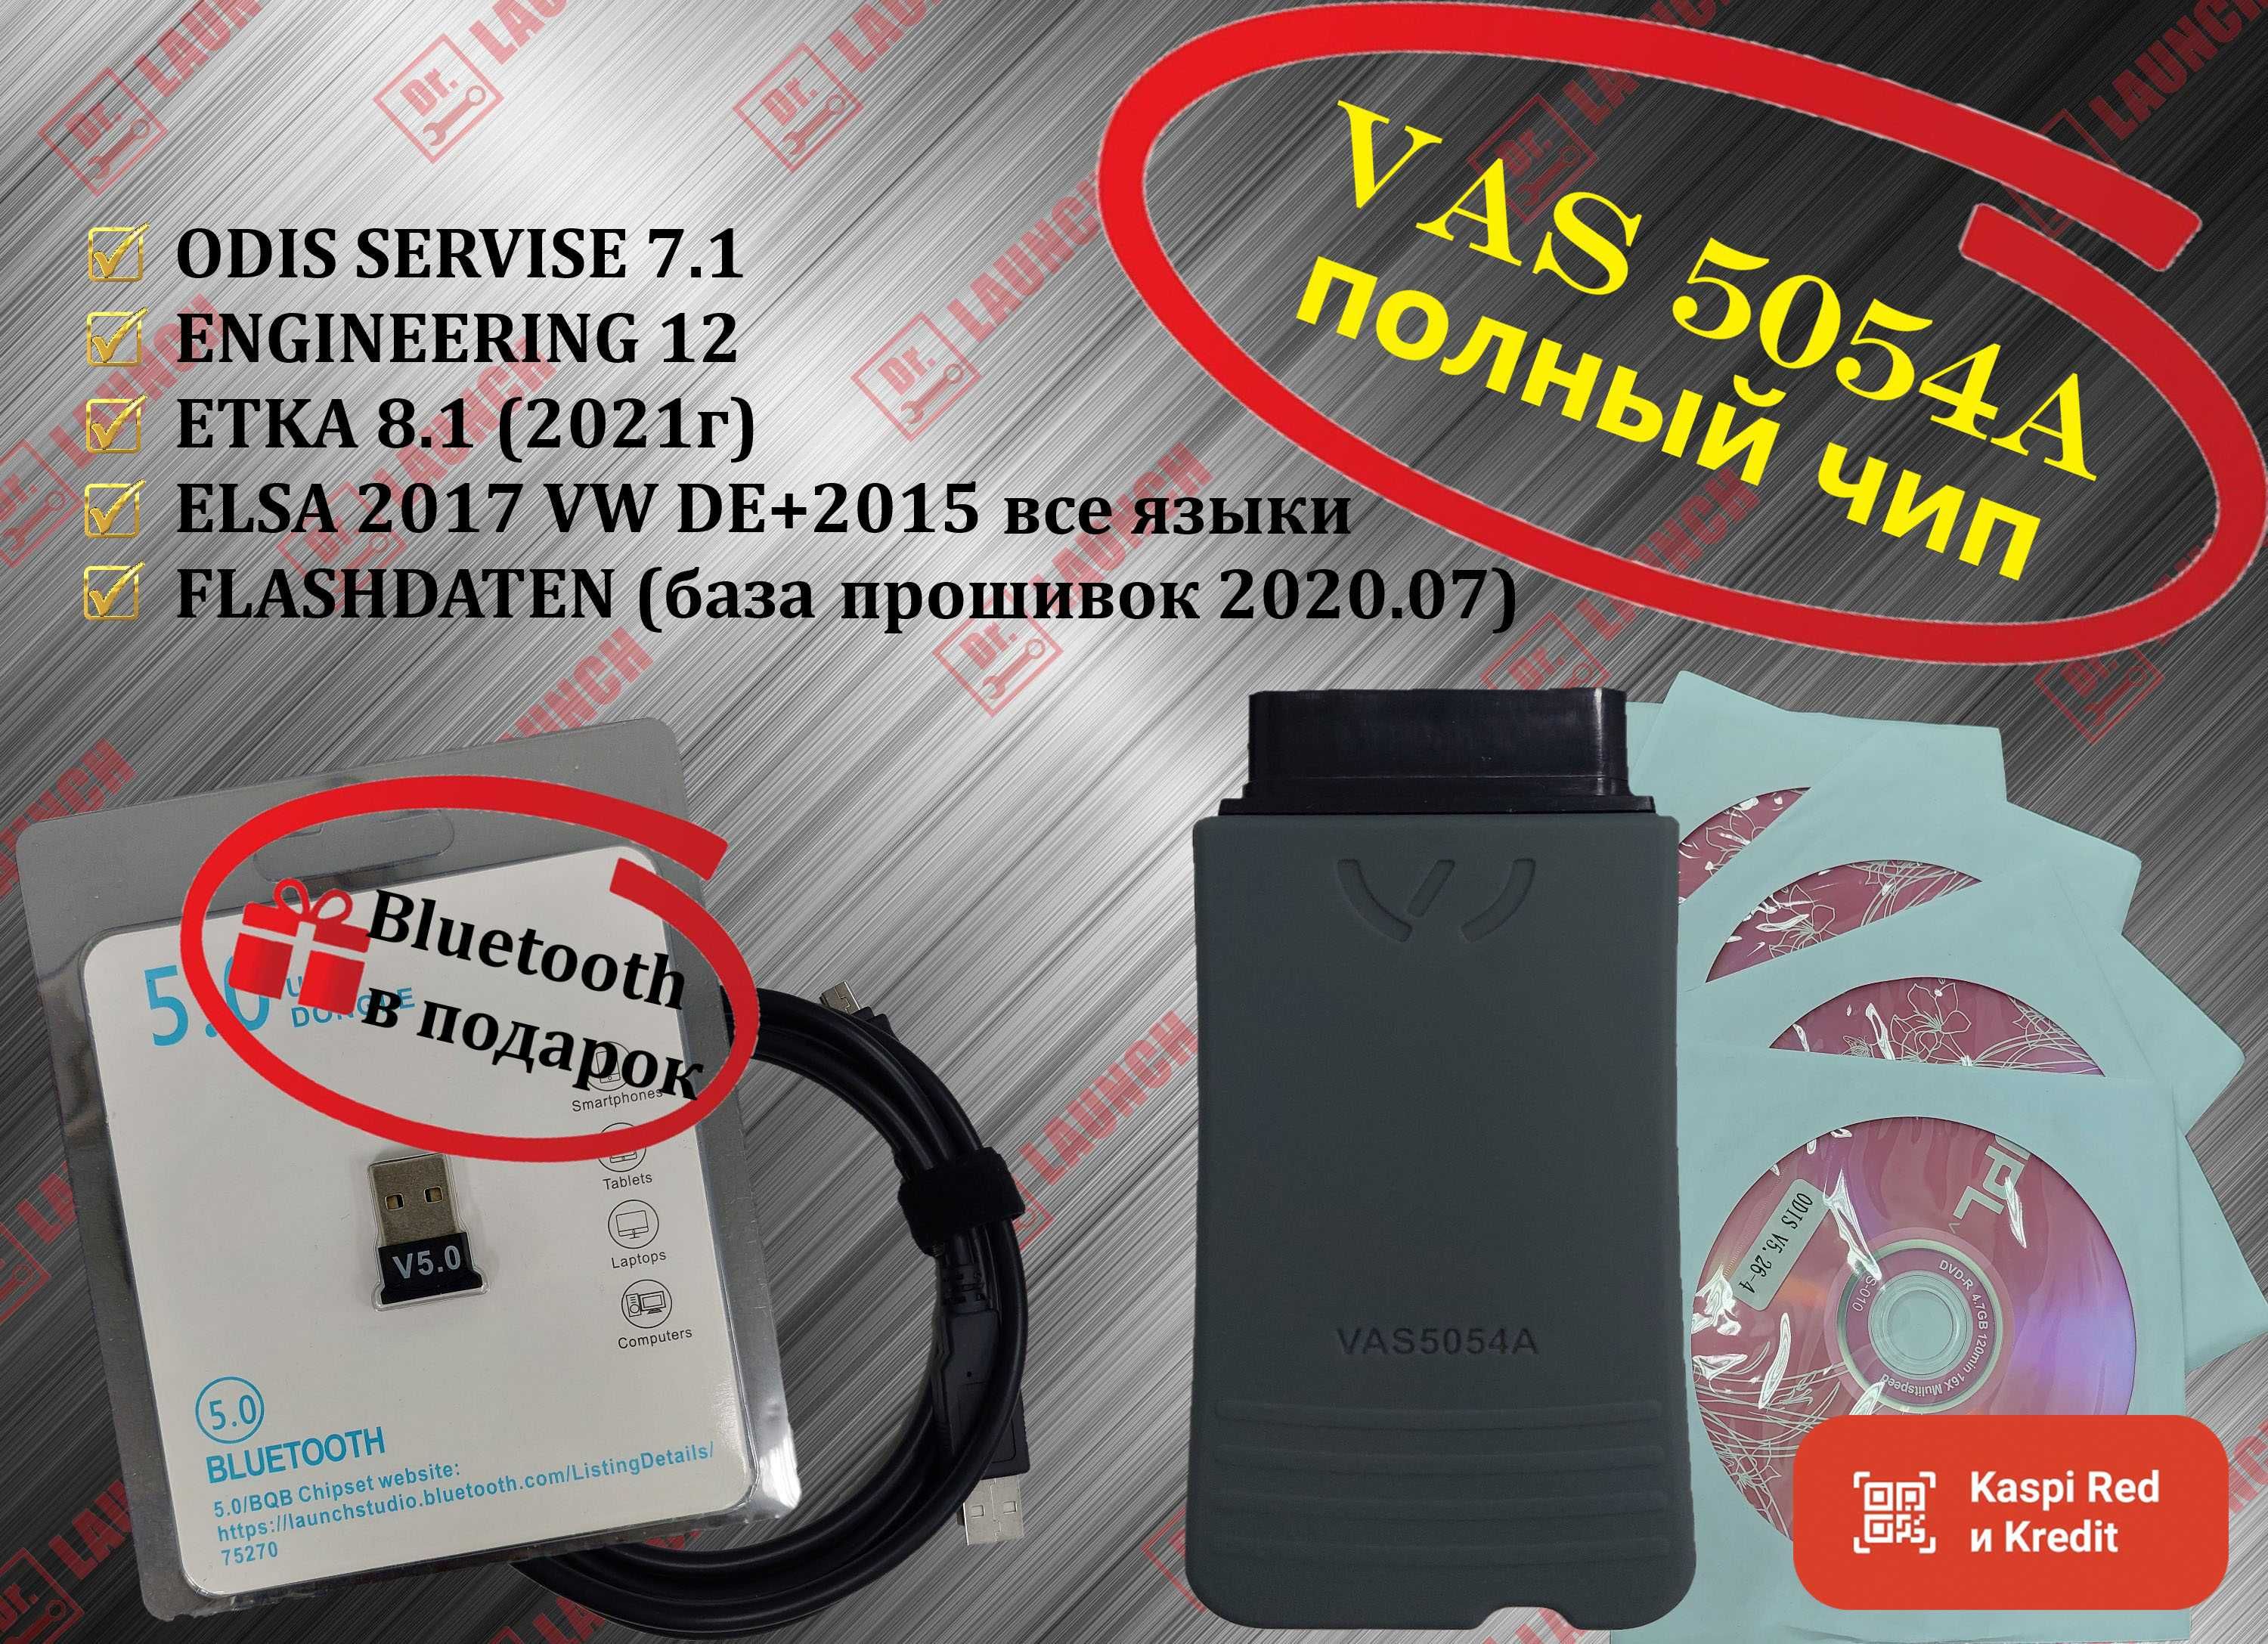 VAS 5054A полный чип odis 7.1 Engineering 12, новый гарантия